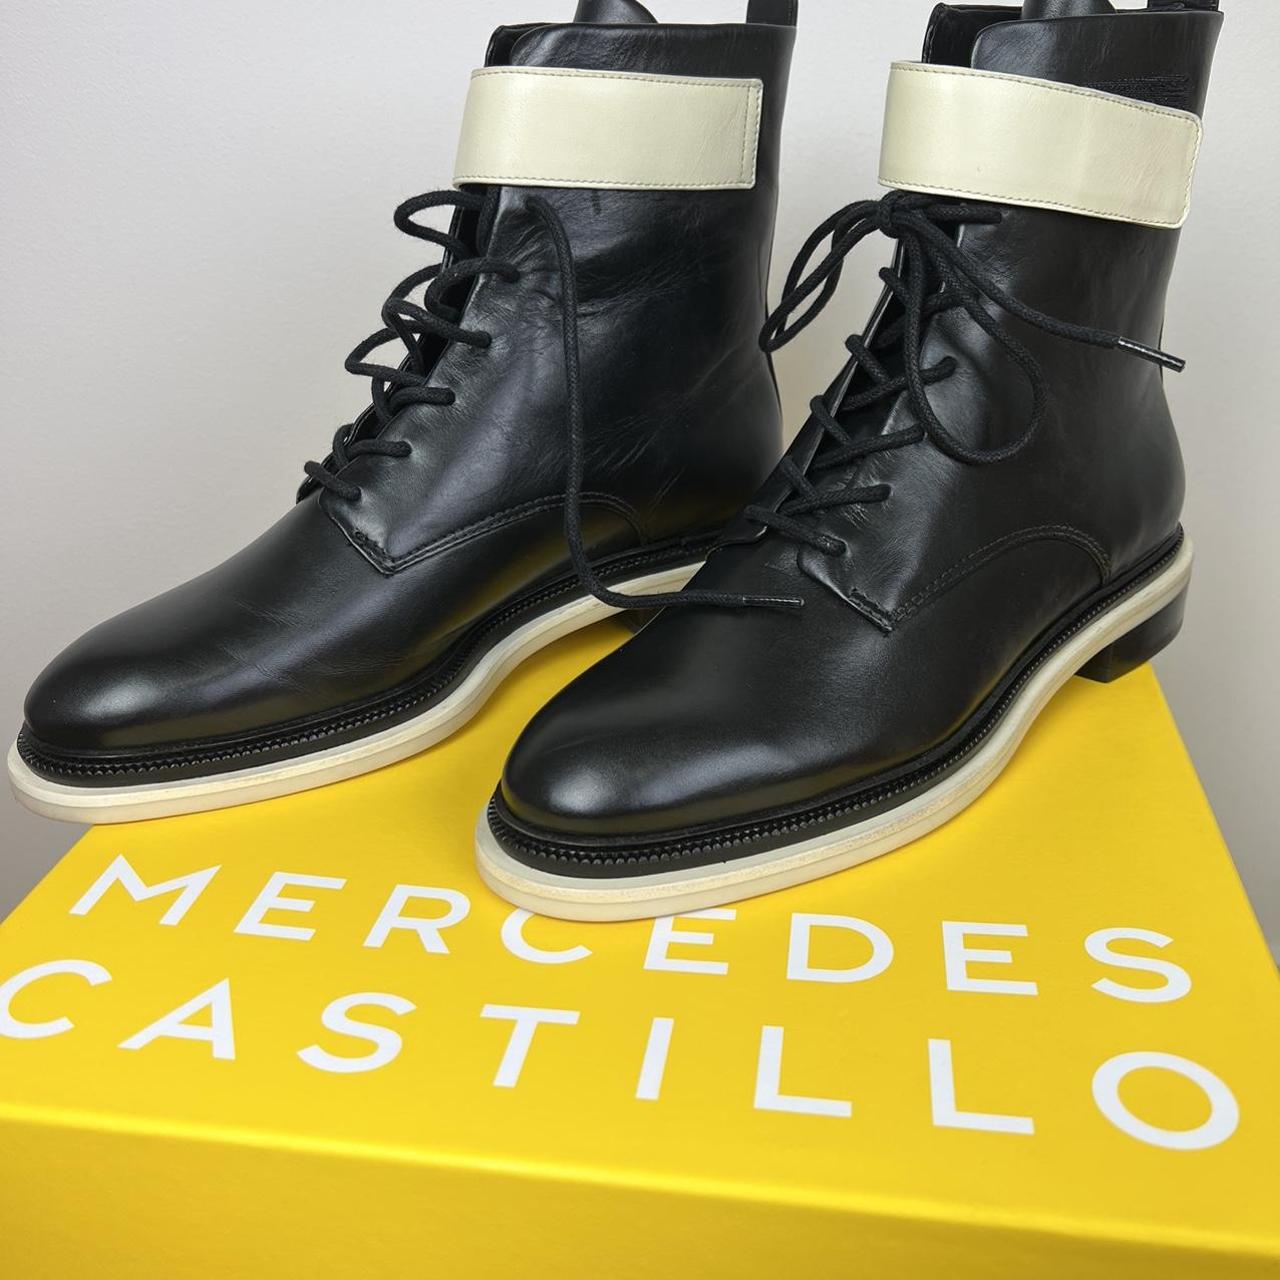 Mercedes Castillo Renan Leather Combat Boots Size:... - Depop